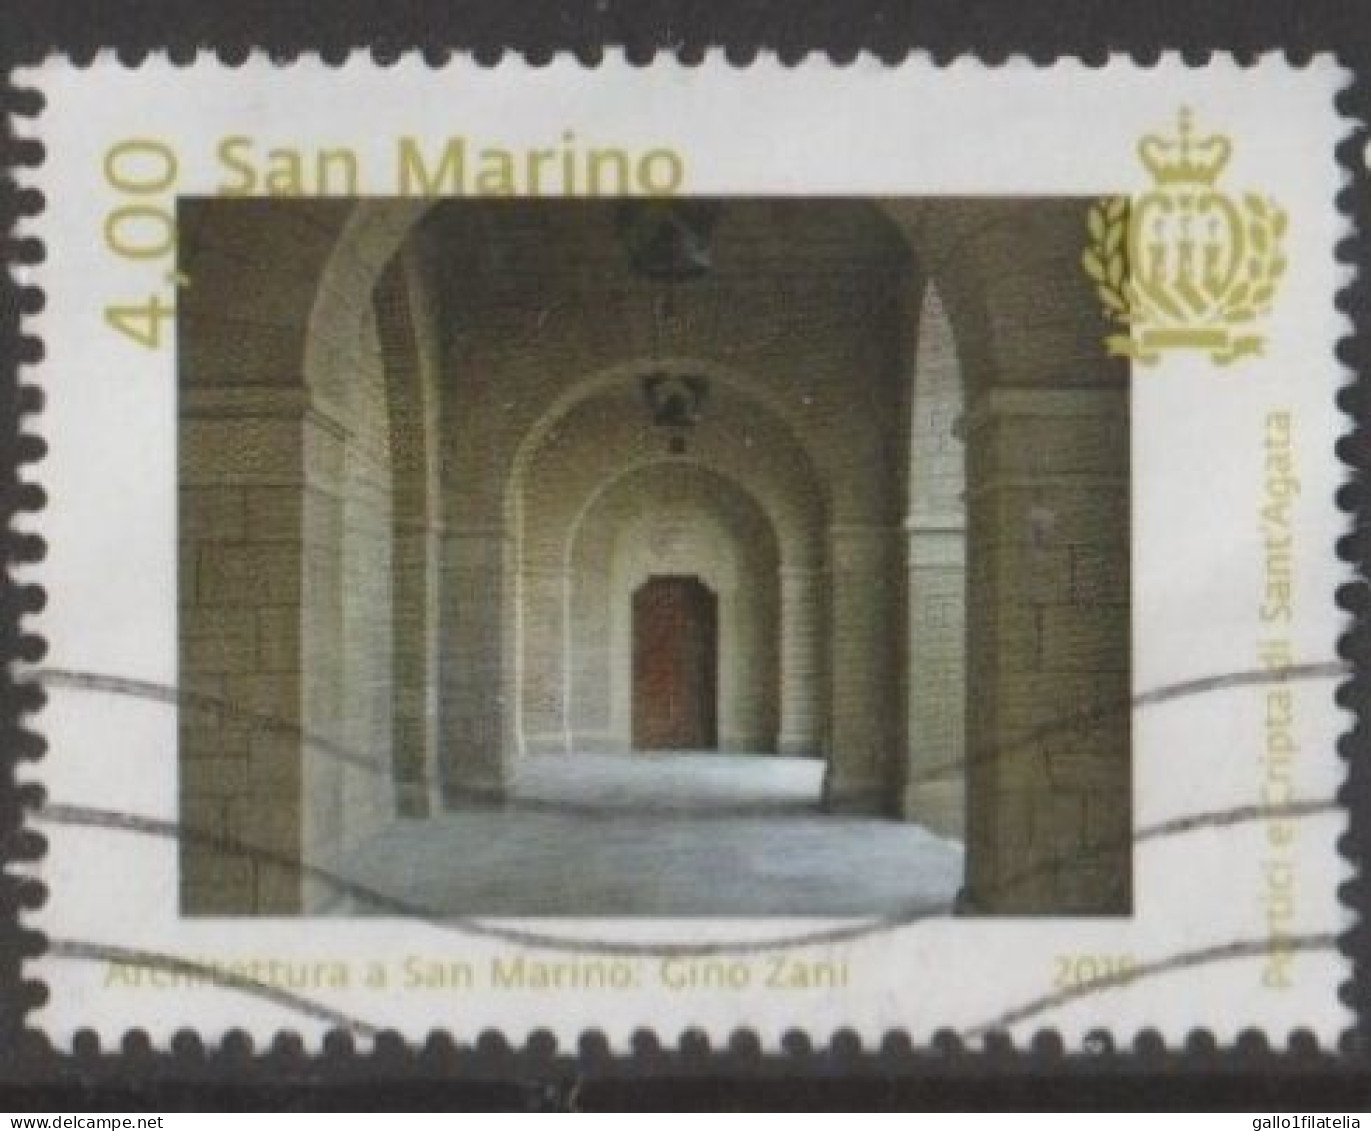 2015 - SAN MARINO - ARCHITETTURA A SAN MARINO / ARCHITECTURE IN SAN MARINO - USATO. - Gebruikt